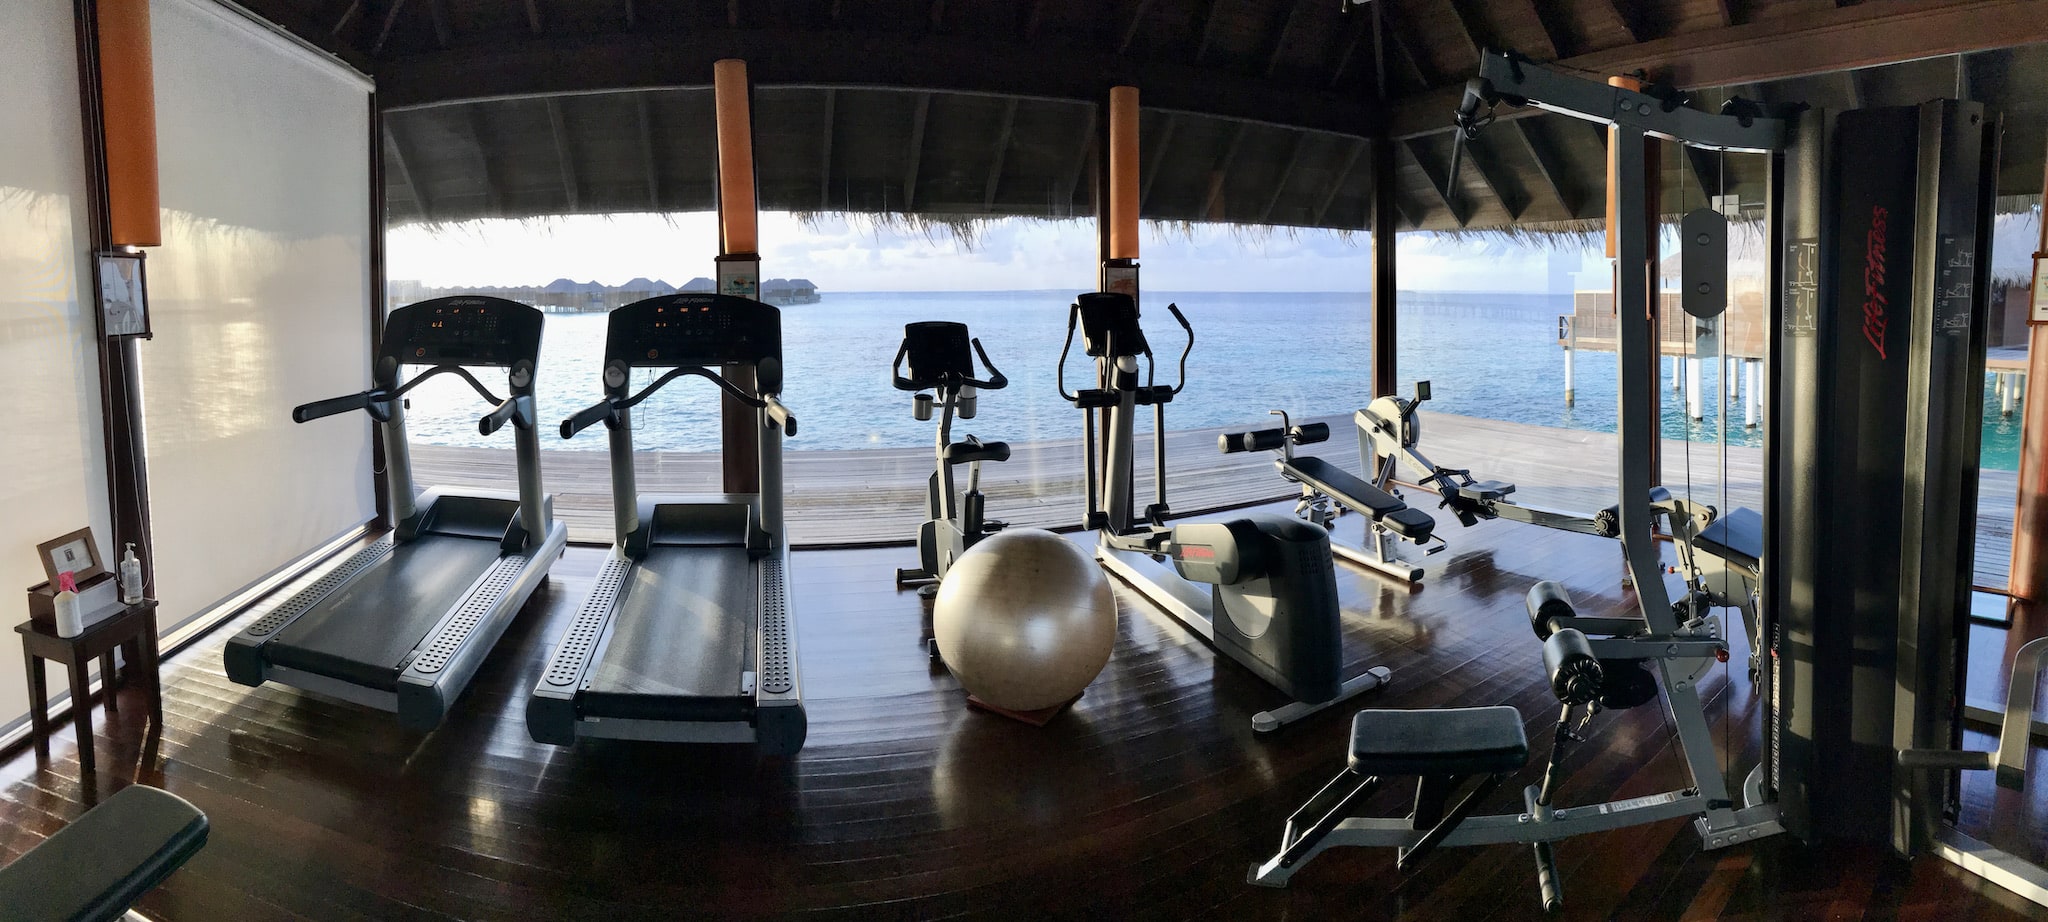 Fitness avec vue sur la mer : Si vous aimez faire du jogging et parcourir de plus longues distances, vous devez forcément aller sur le tapis roulant sur une île des Maldives. Photo: Sascha Tegtmeyer Rapport de voyage Expériences Coco Bodu Hithi Maldives